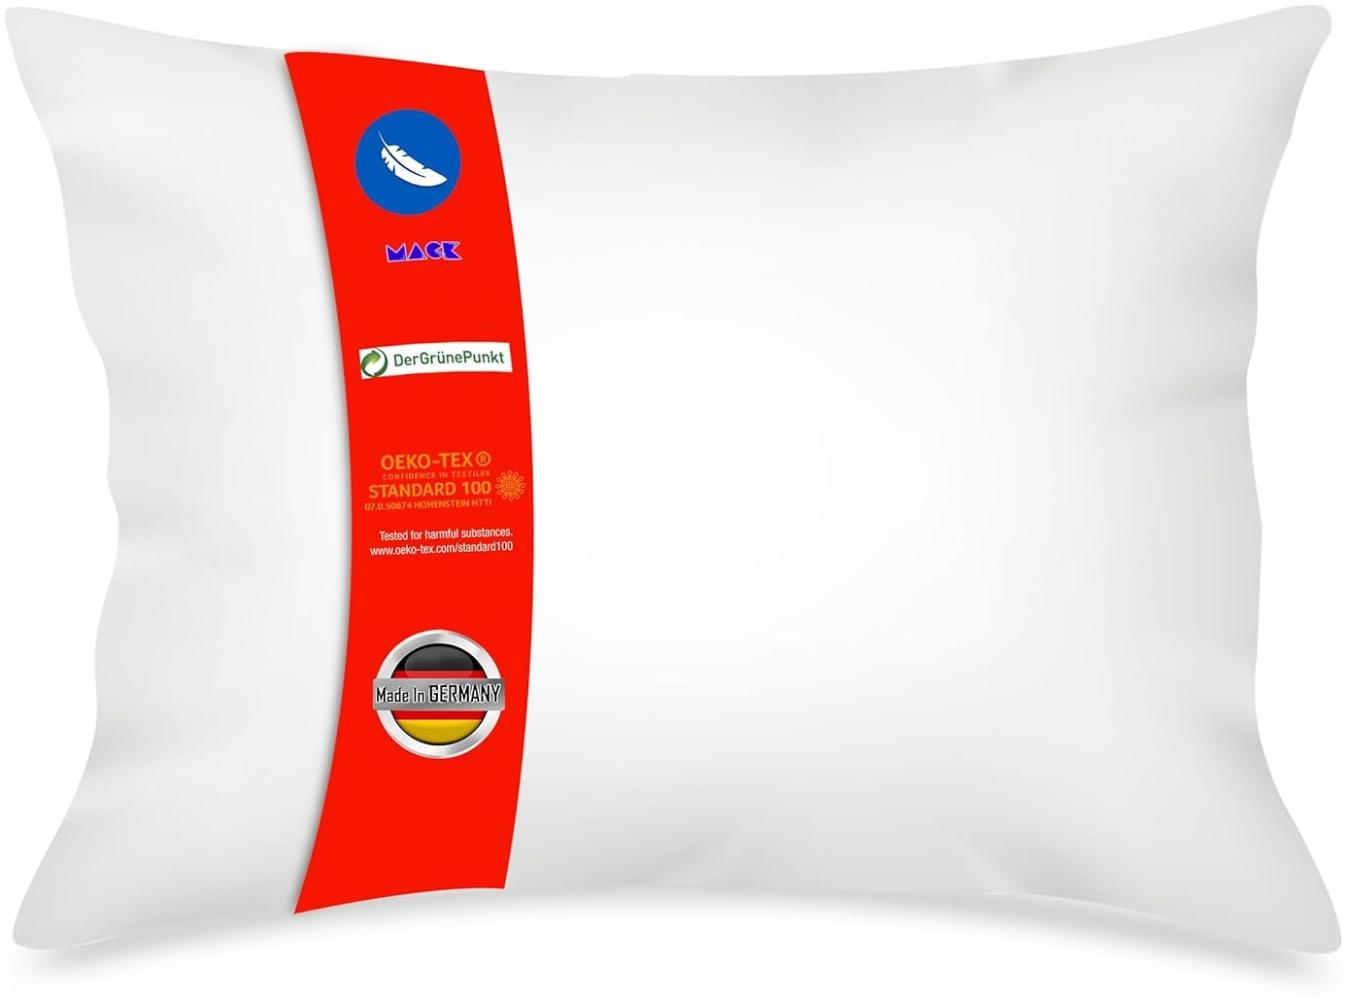 Mack - Basic Kissen Set mit Federfüllung - Federkissen für einen erholsamen Schlaf - 50x70 cm Bild 1